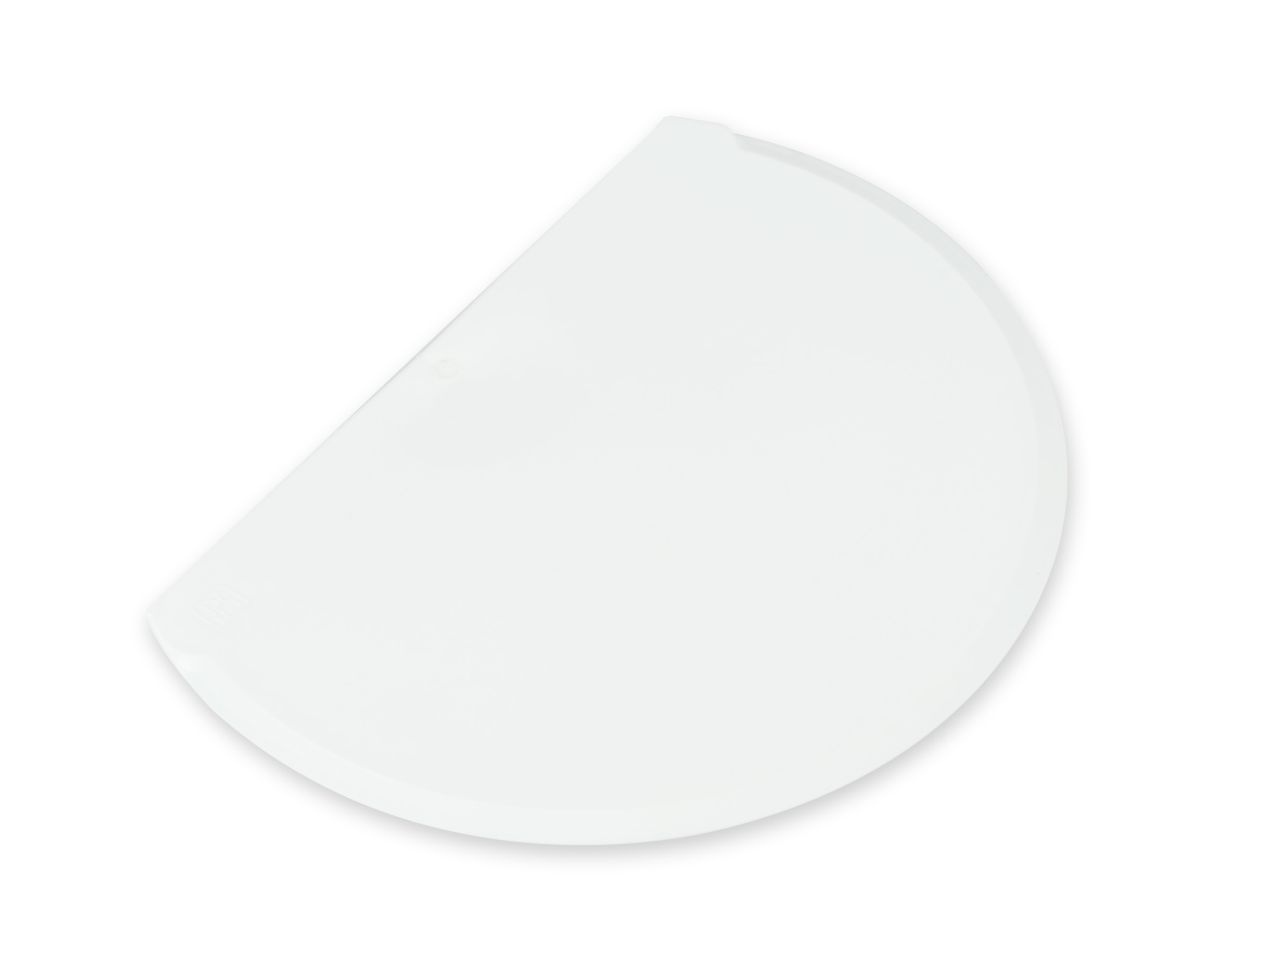 Teigschaber: flexibel, Kunststoff, Weiß, 15,7 x 11,4 cm